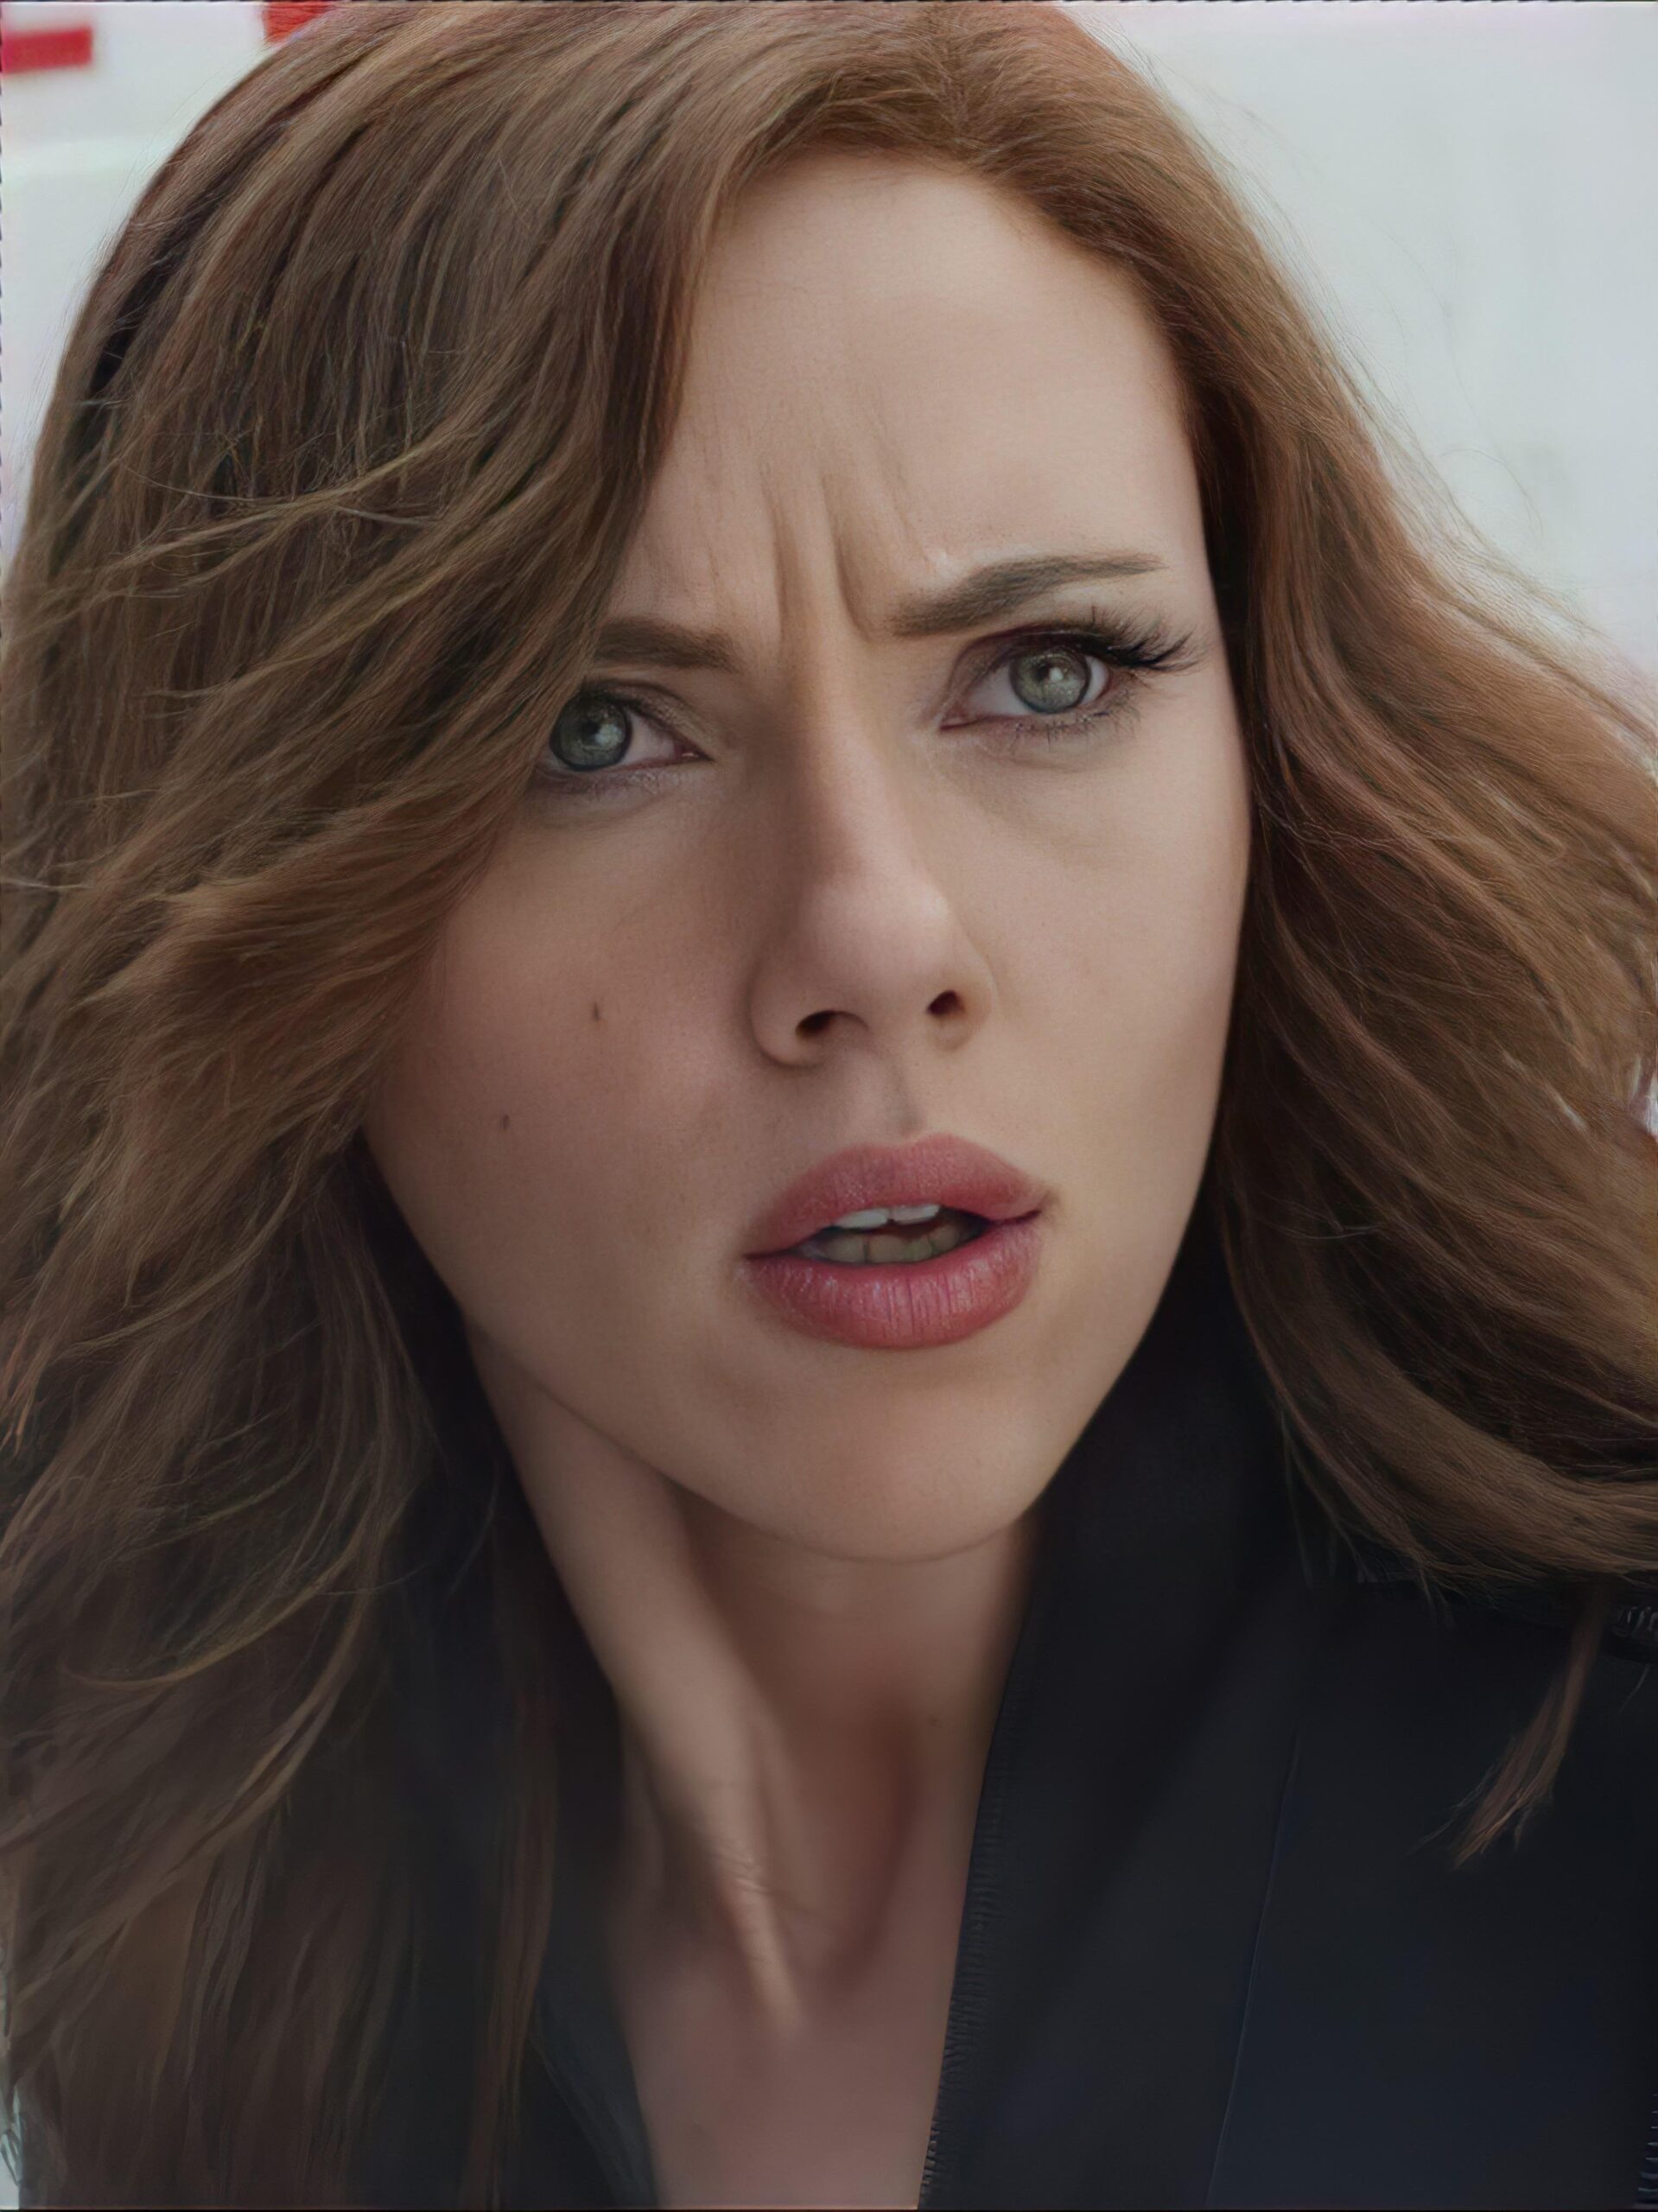 Scarlett Johanssons reaction when you slip a finger inside her